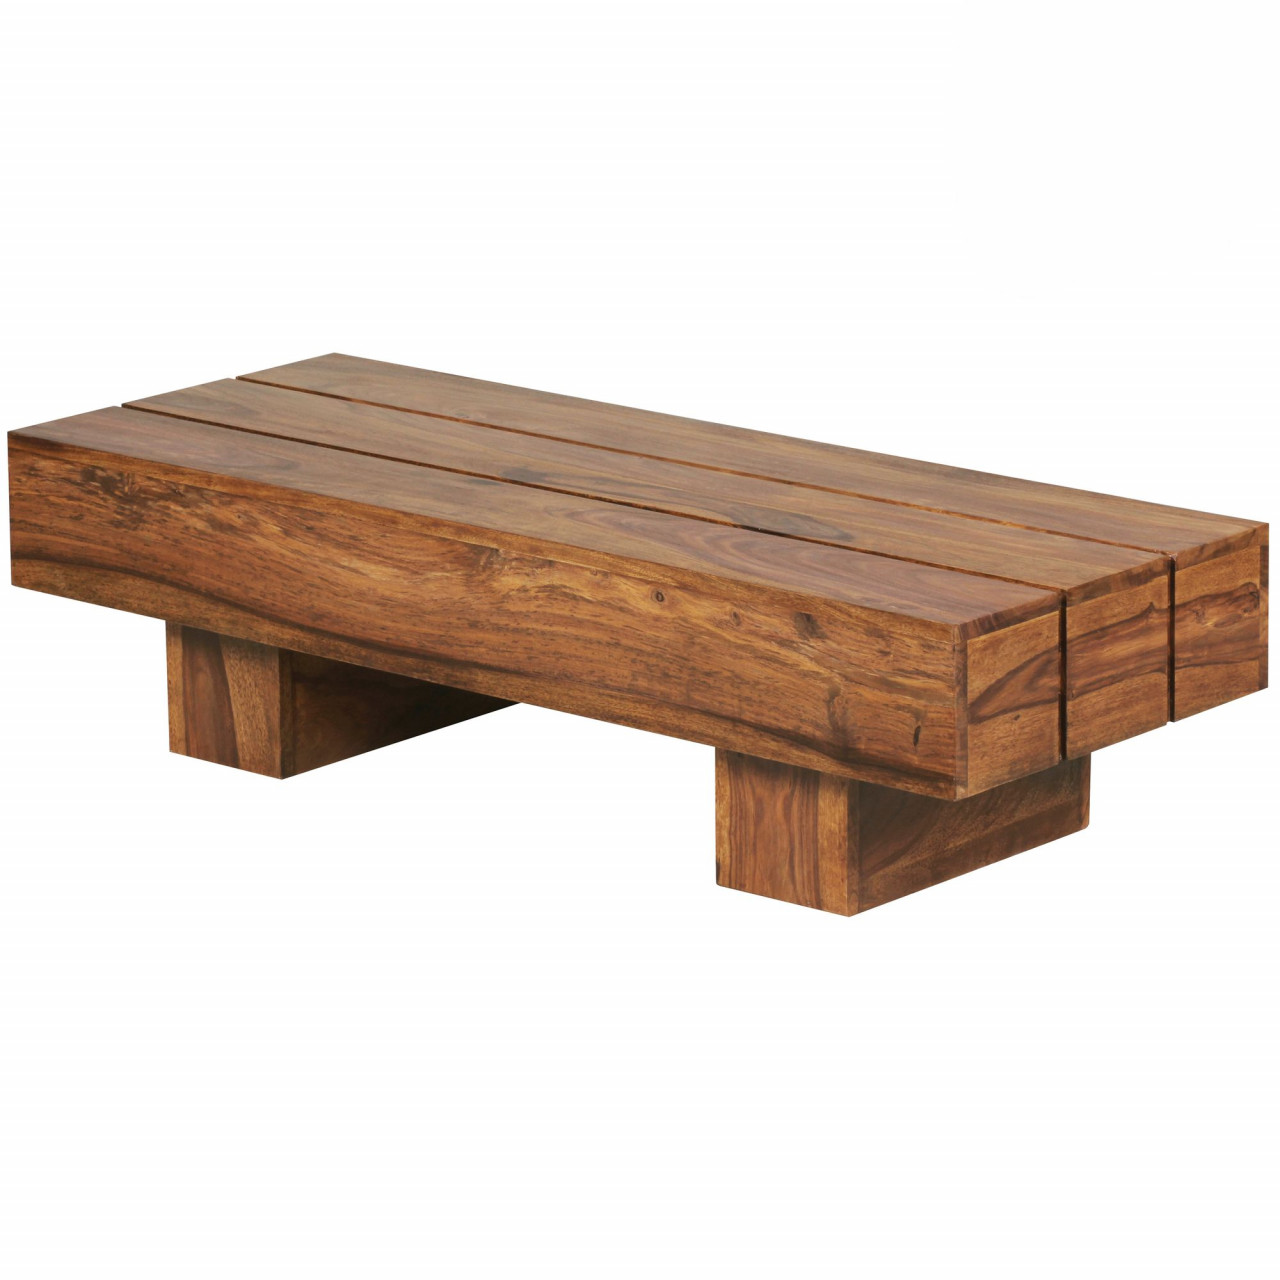 Couchtisch LUCCA Massiv-Holz Sheesham 120cm breit Design Wohnzimmer-Tisch dunkel-braun Landhaus-Stil Beistelltisch von Wohnling